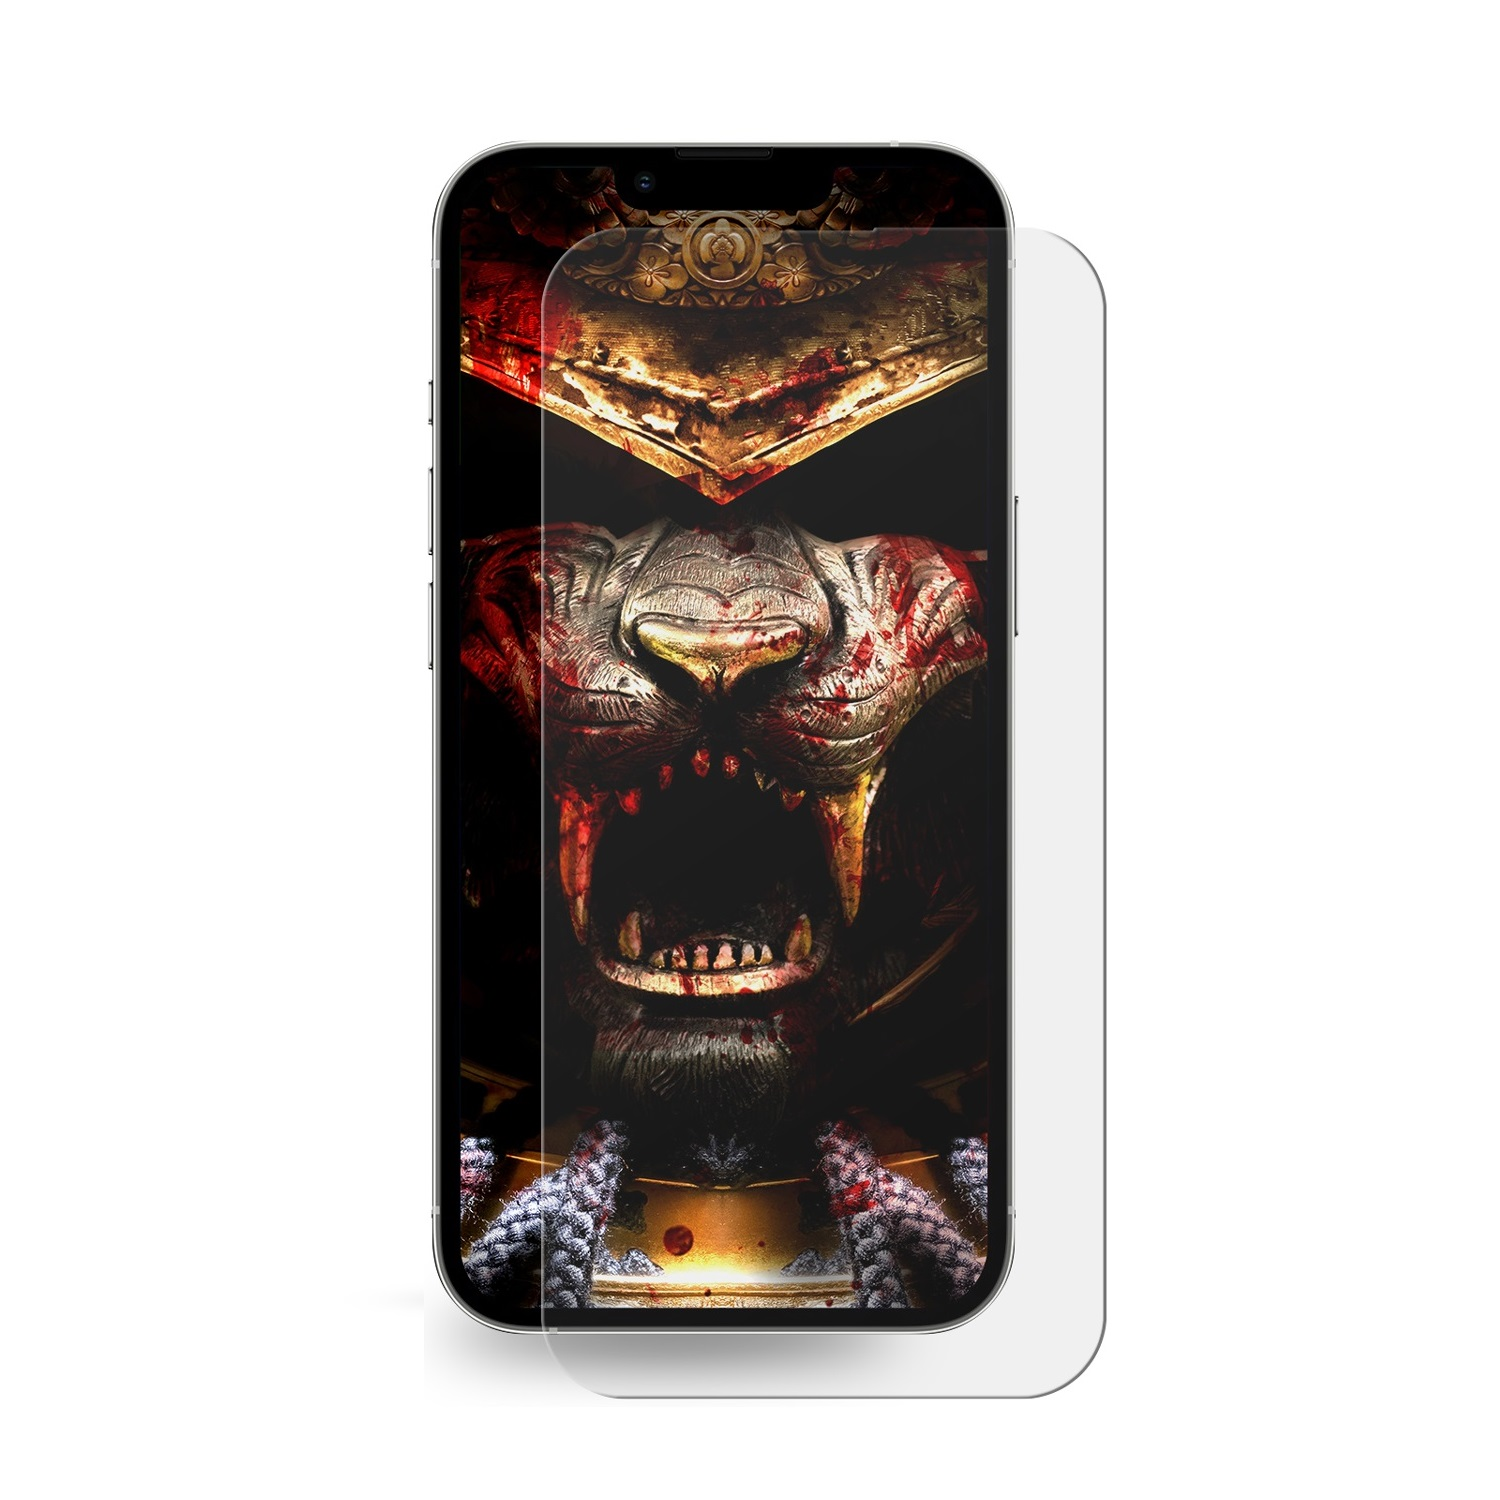 PROTECTORKING 14) 6x COVER HD Panzerfolie iPhone HYDROGEL Apple Displayschutzfolie(für FULL KLAR